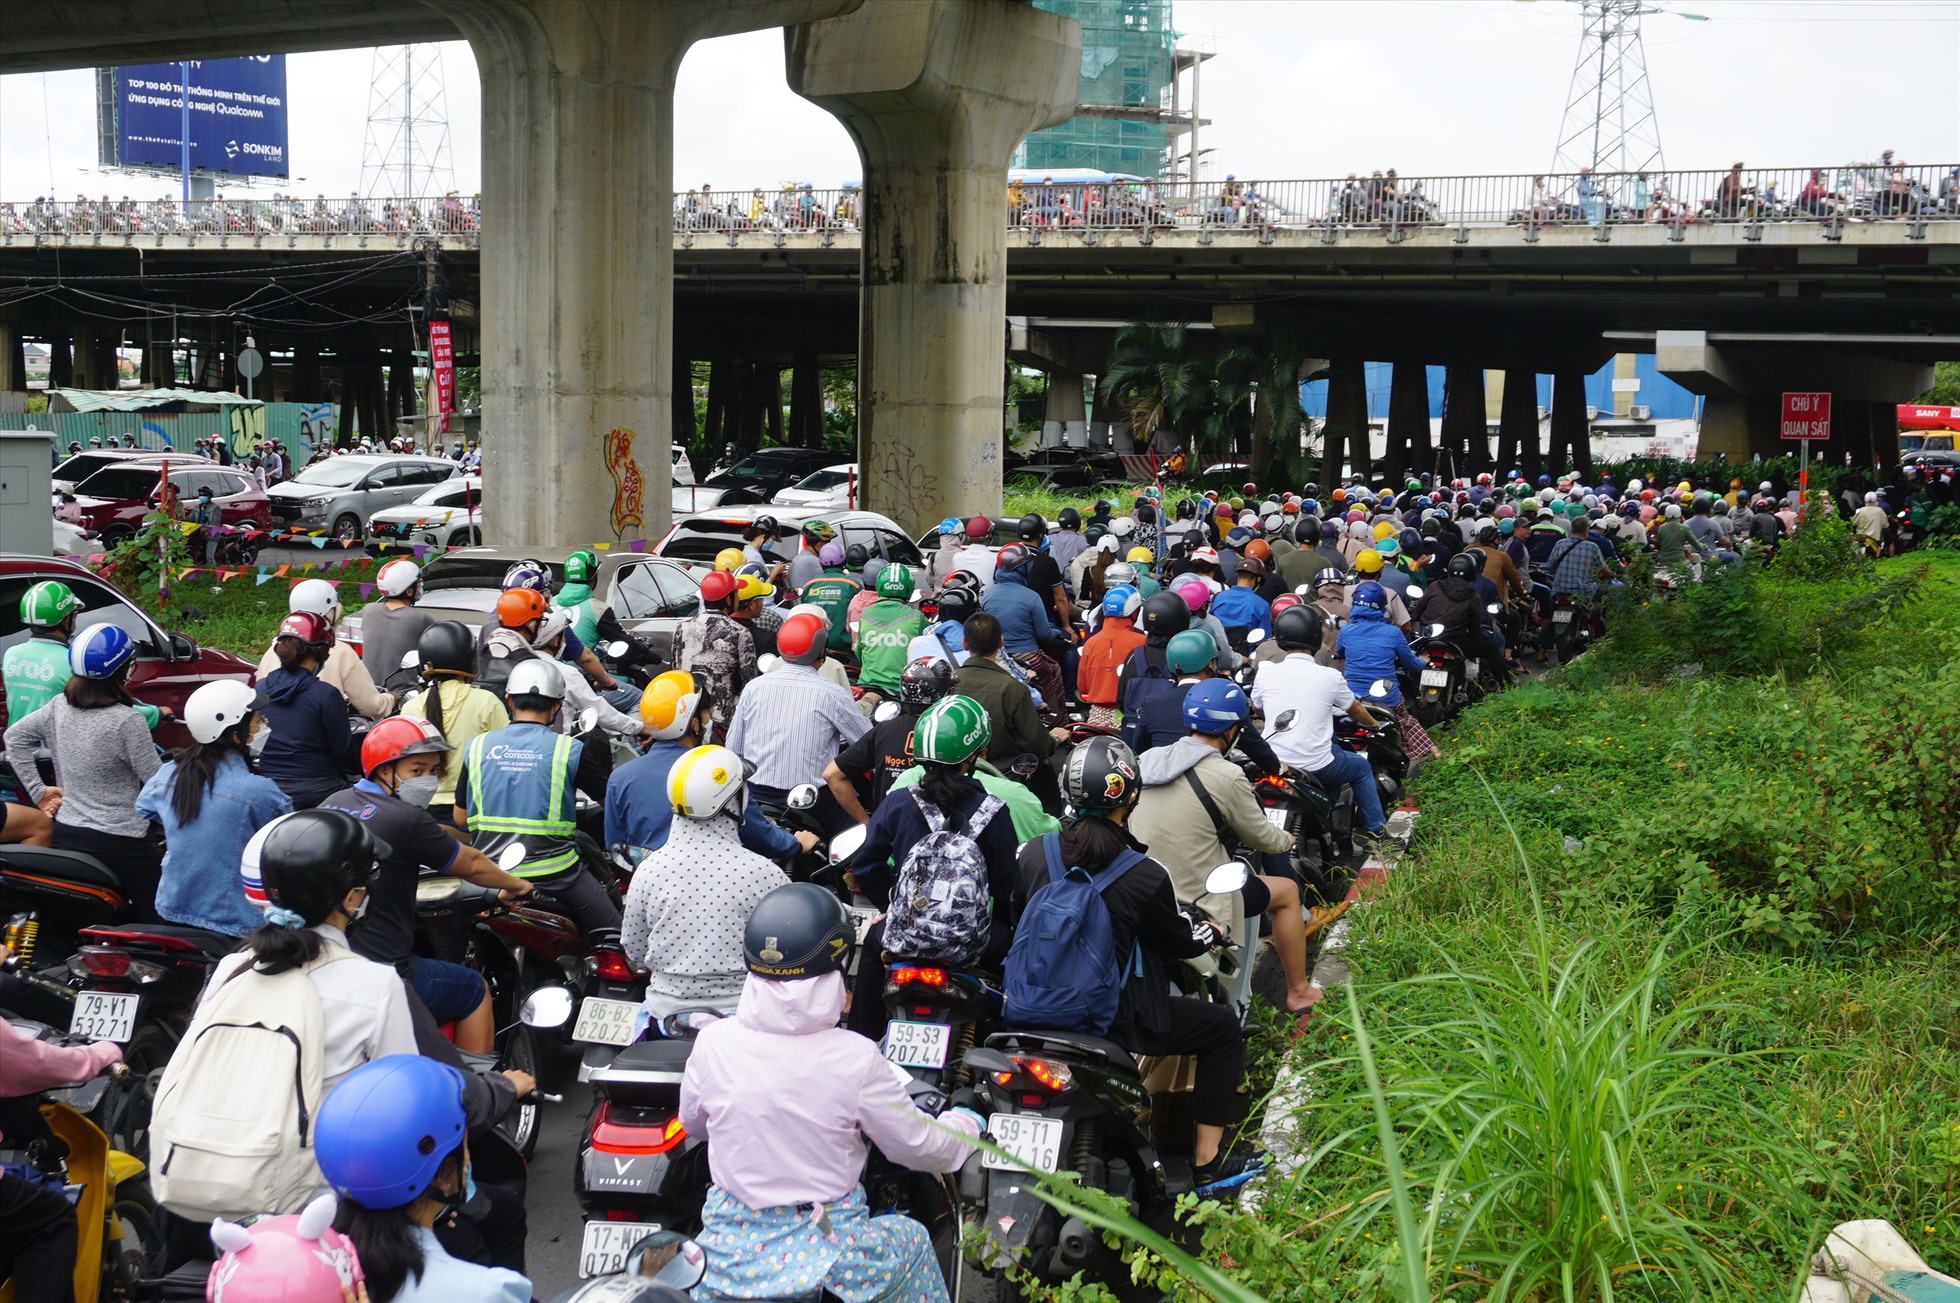 Hướng dưới dạ cầu Sài Gòn vào đường nội bộ khu đô thị Vinhomes Central park để ra đường Nguyễn Hữu Cảnh cũng đông nghịt xe, người dân đi lại vô cùng khó khăn, khổ sở.